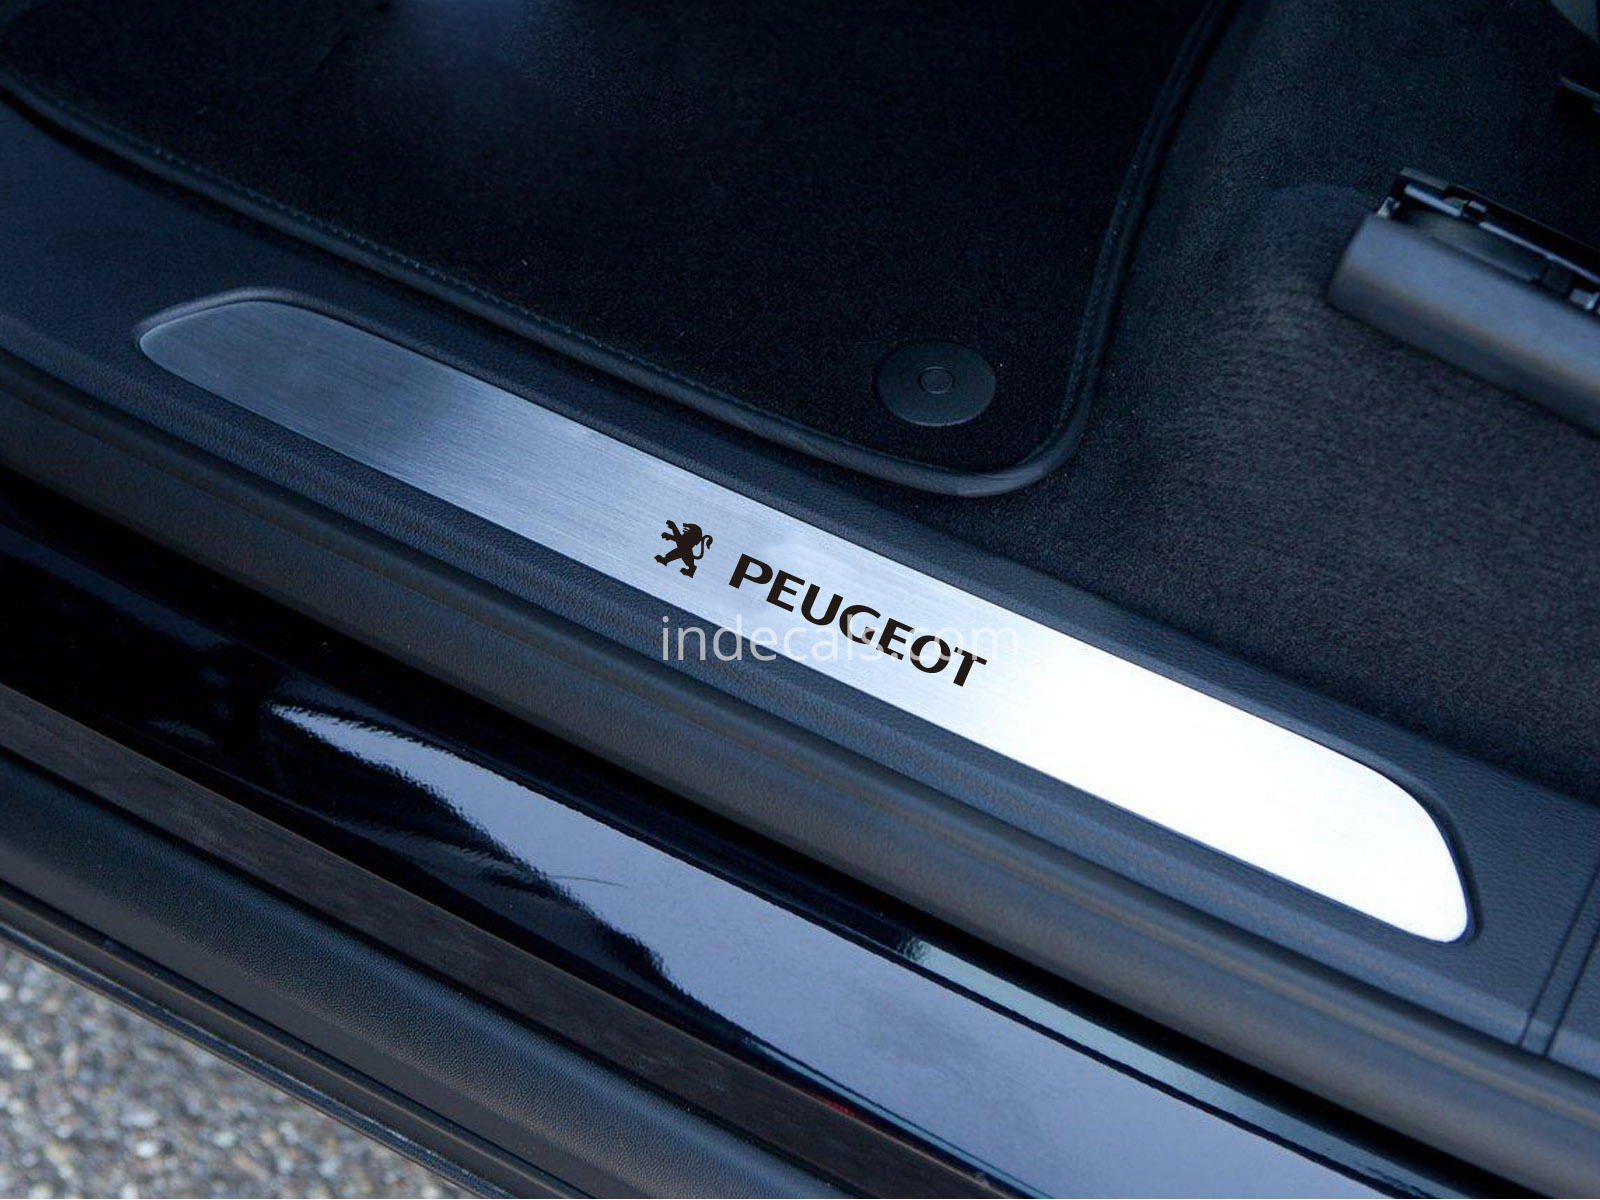 6 x Peugeot Stickers for Door Sills - Black